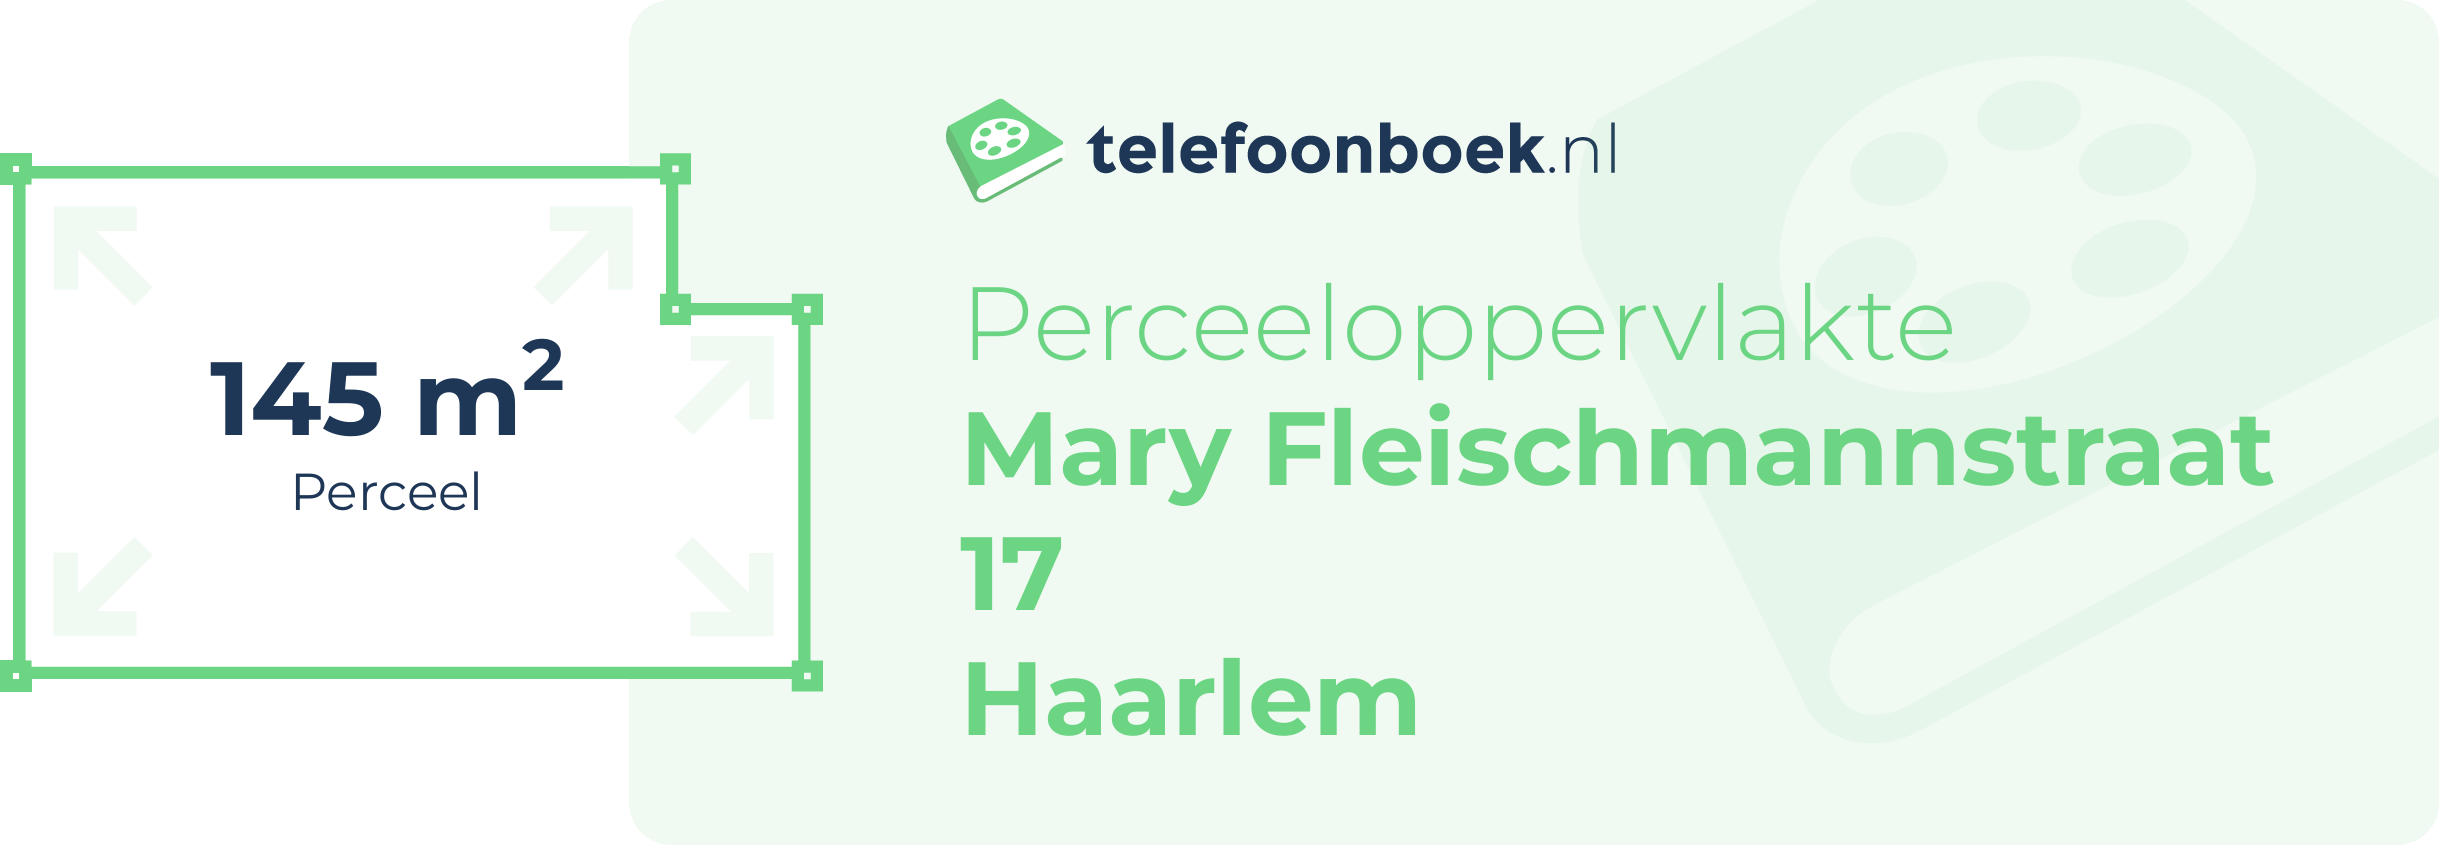 Perceeloppervlakte Mary Fleischmannstraat 17 Haarlem